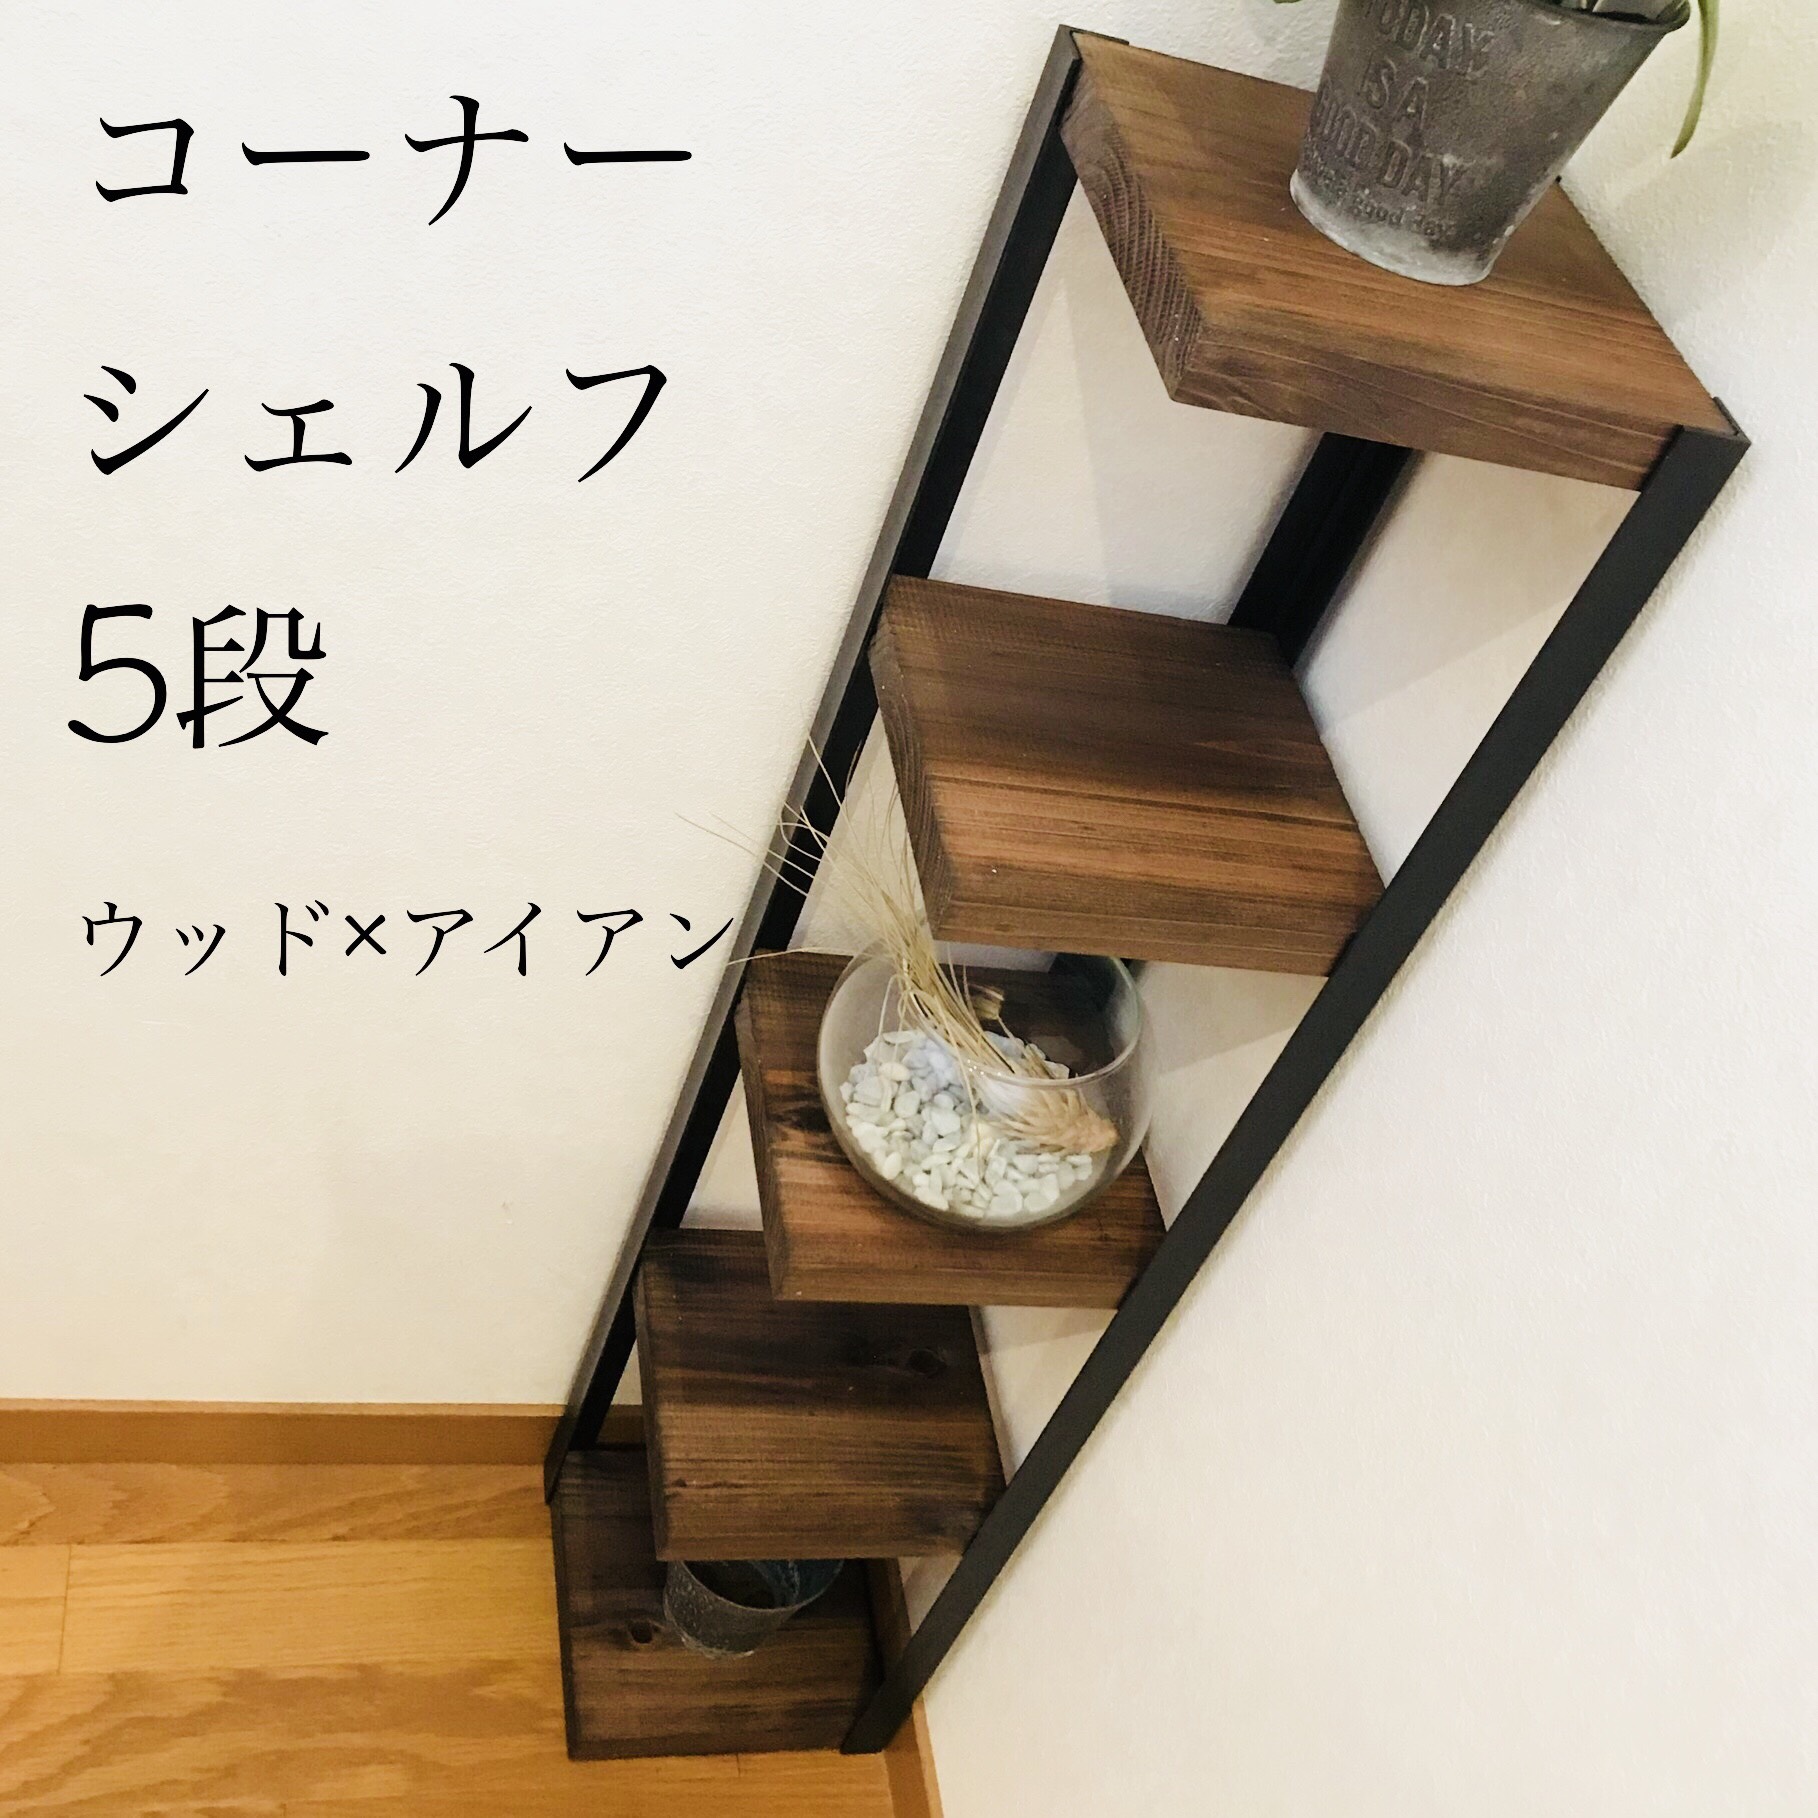 コーナーシェルフ5段【handmade】階段踊り場にお部屋の角に☆ウッド